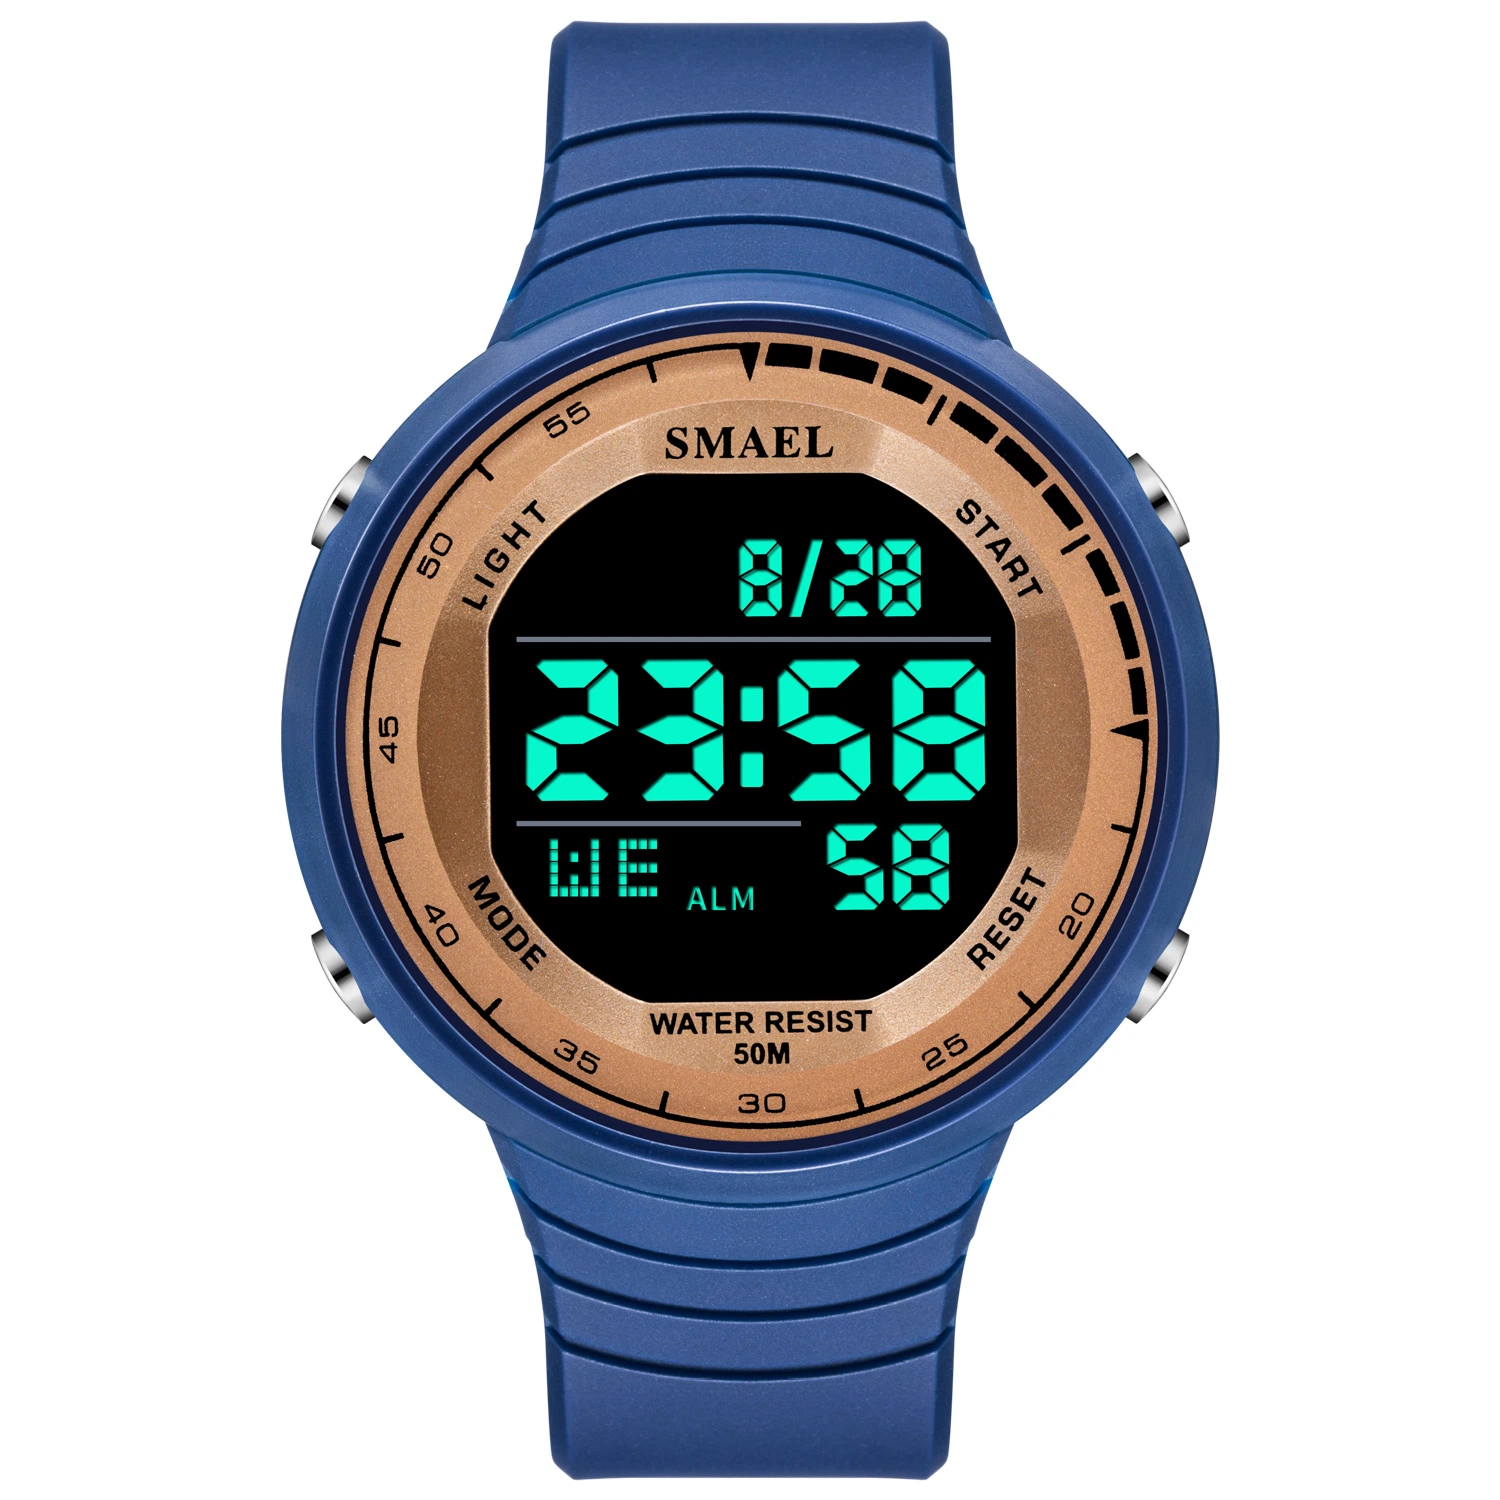 اللون الأزرق بالجملة الرجال الرياضية الرقمية ساعات LED في الهواء الطلق اللباس ساعات كريستي ساعة 50 م مقاومة للماء